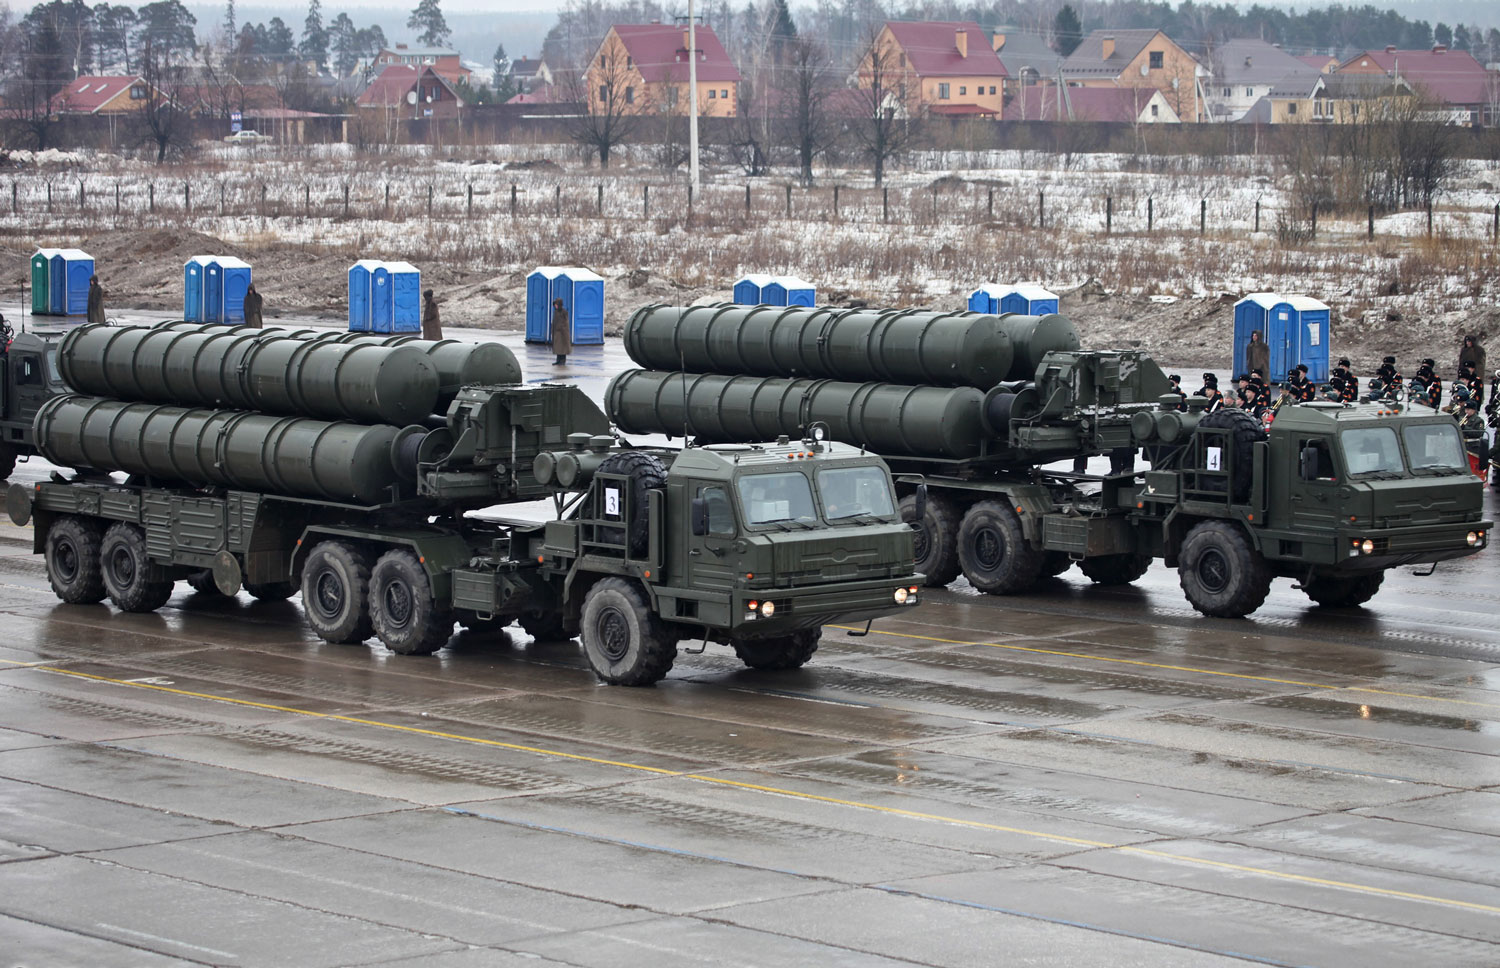 Σοβαρή απειλή για Ουκρανία και ΝΑΤΟ οι ρωσικοί S-400 στην περιοχή της Κριμαίας